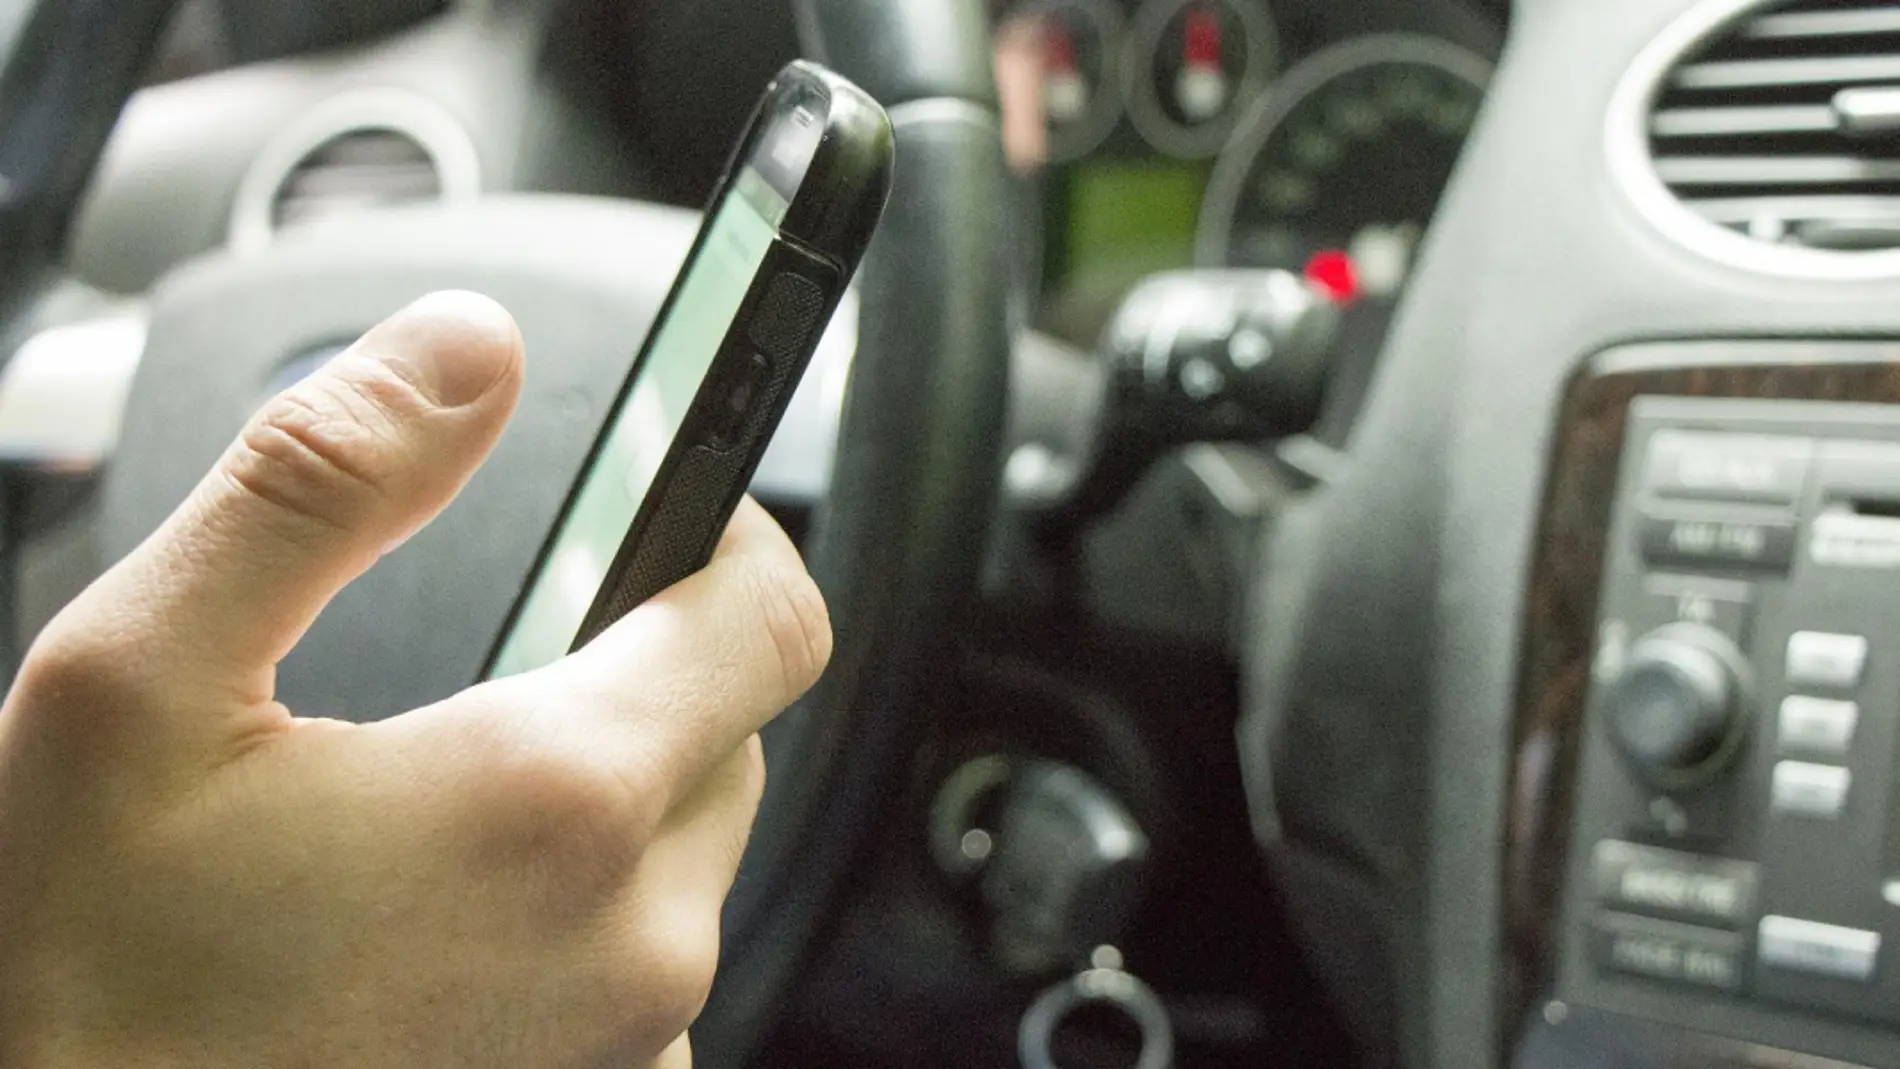 Sólo hay tres formas legales de llevar tu móvil en el coche y son estas